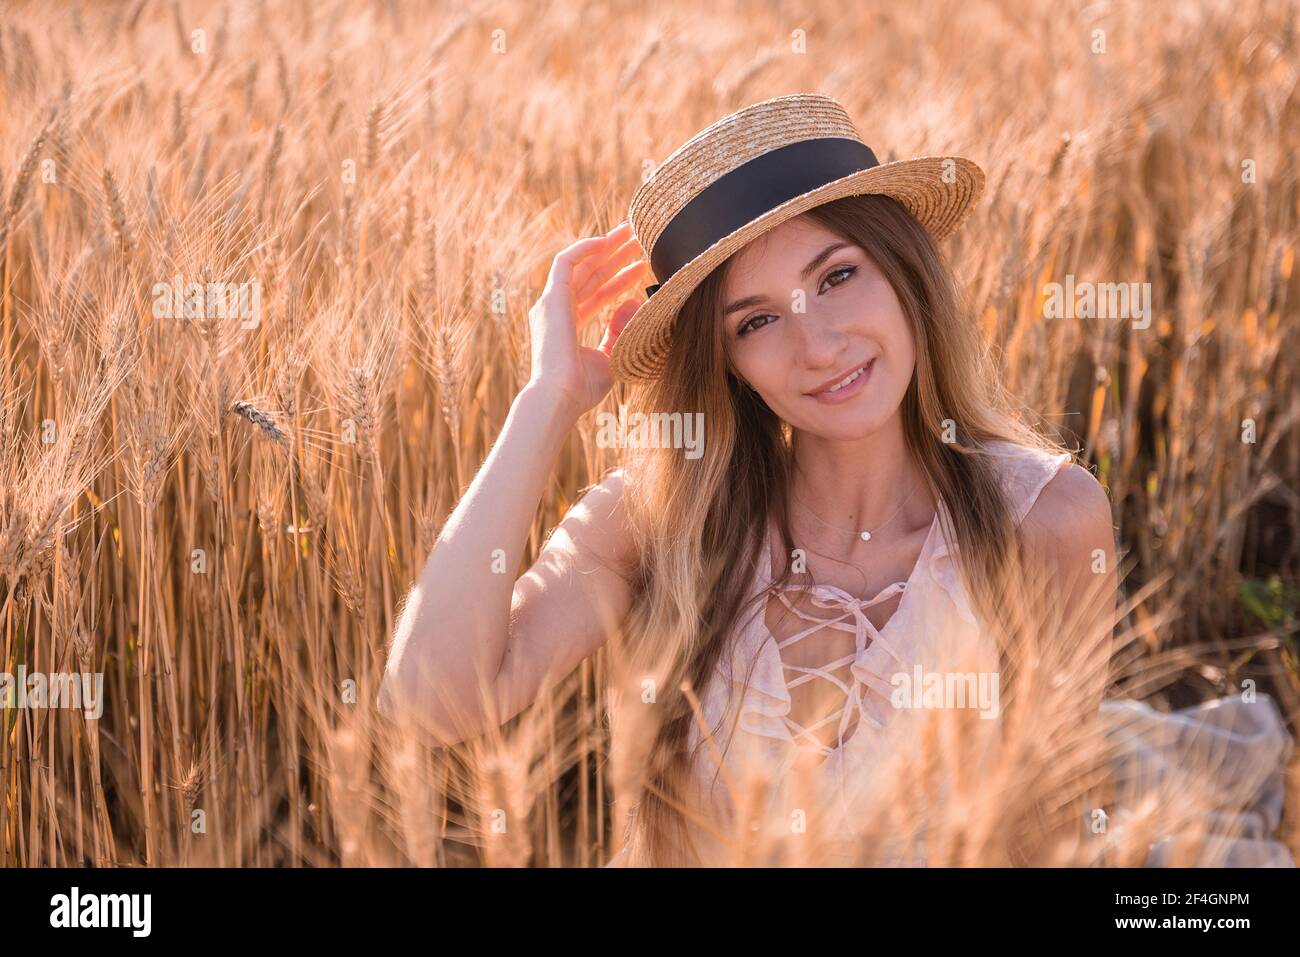 Jeune femme blonde en chapeau de paille sur le fond d'un champ d'épillets dorés de blé, seigle. Gros plan portrait d'une belle fille aux yeux bruns. W Banque D'Images